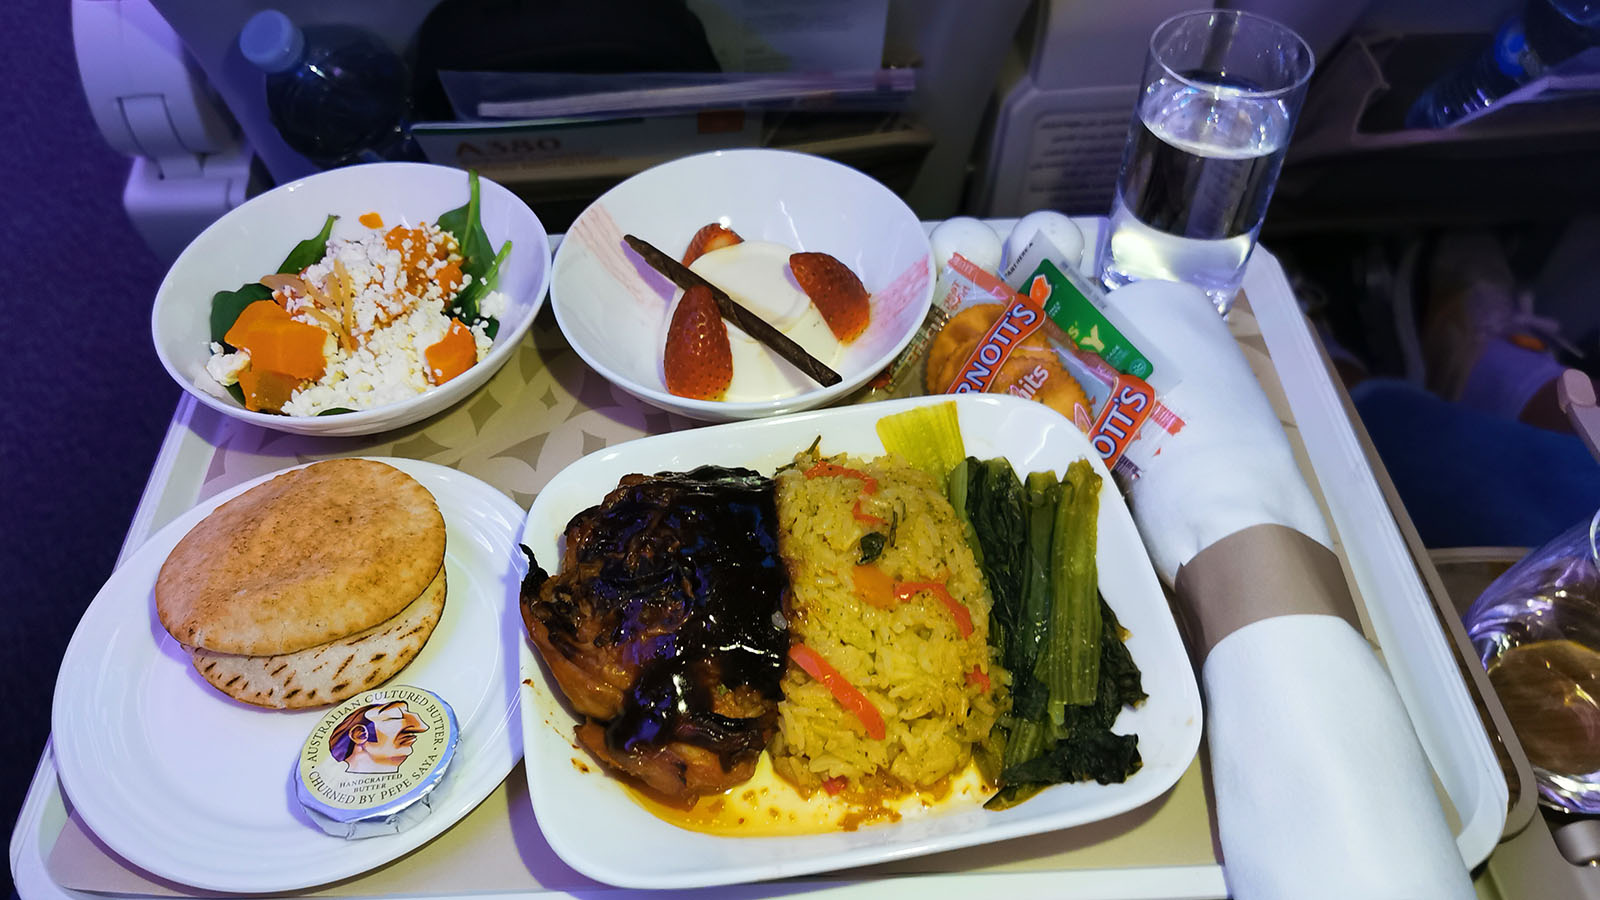 Hot dinner in Emirates Airbus A380 Premium Economy